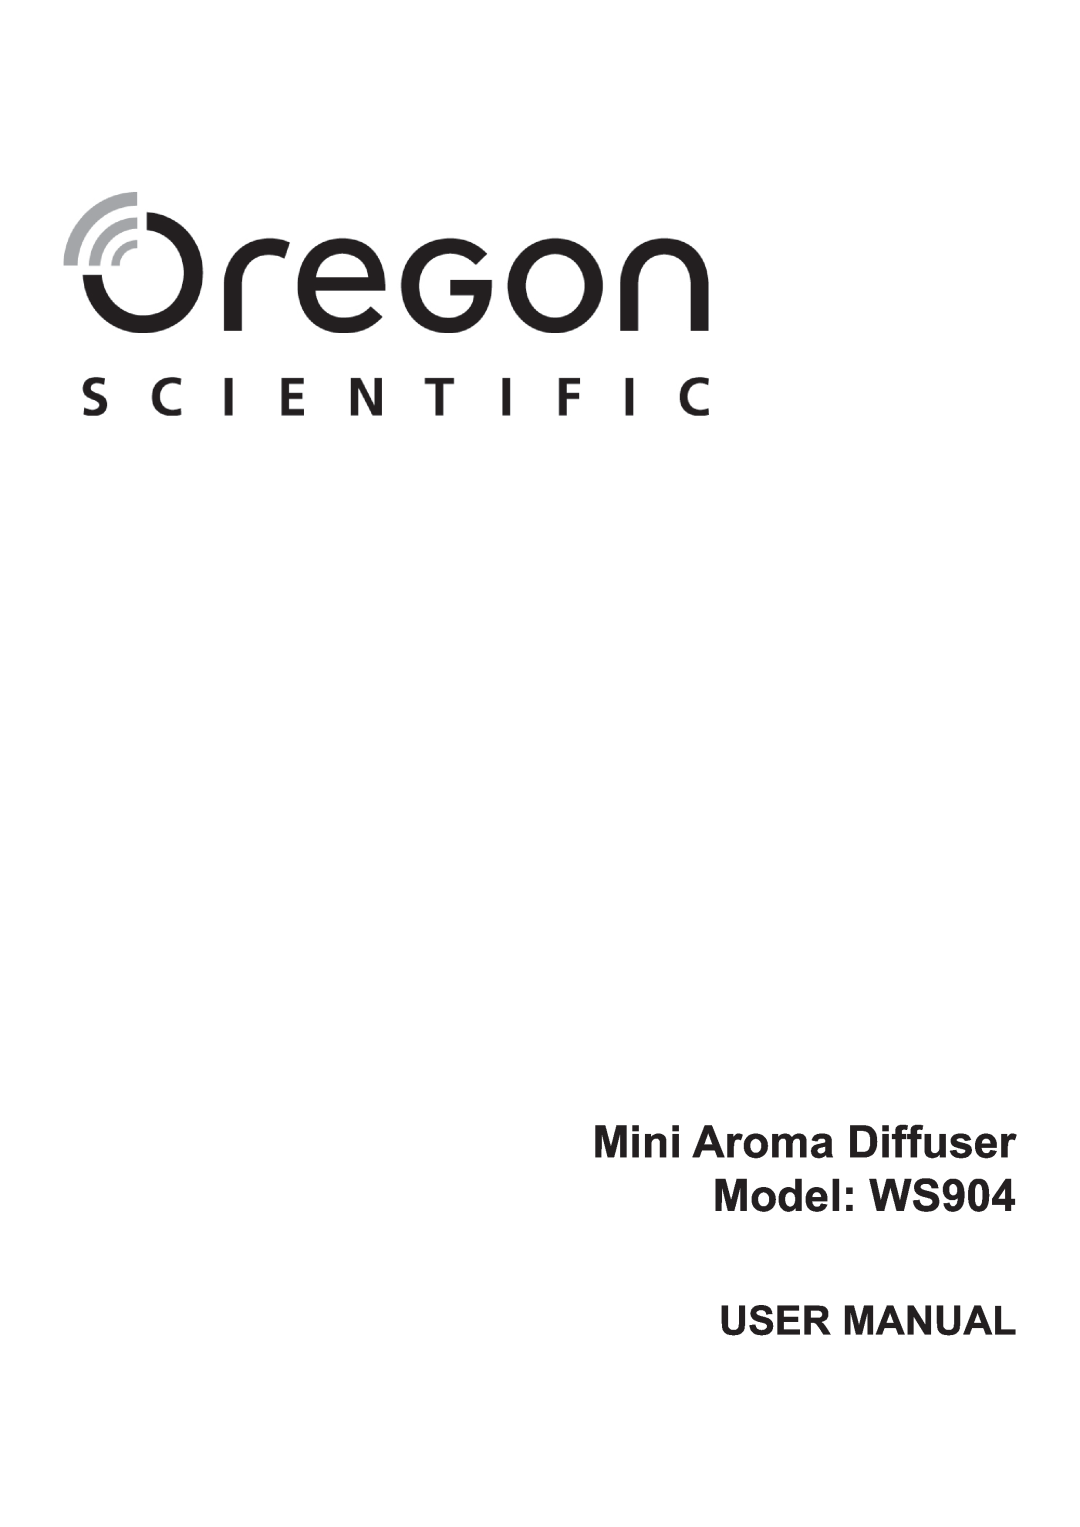 Oregon Scientific user manual Mini Aroma Diffuser Model: WS904 